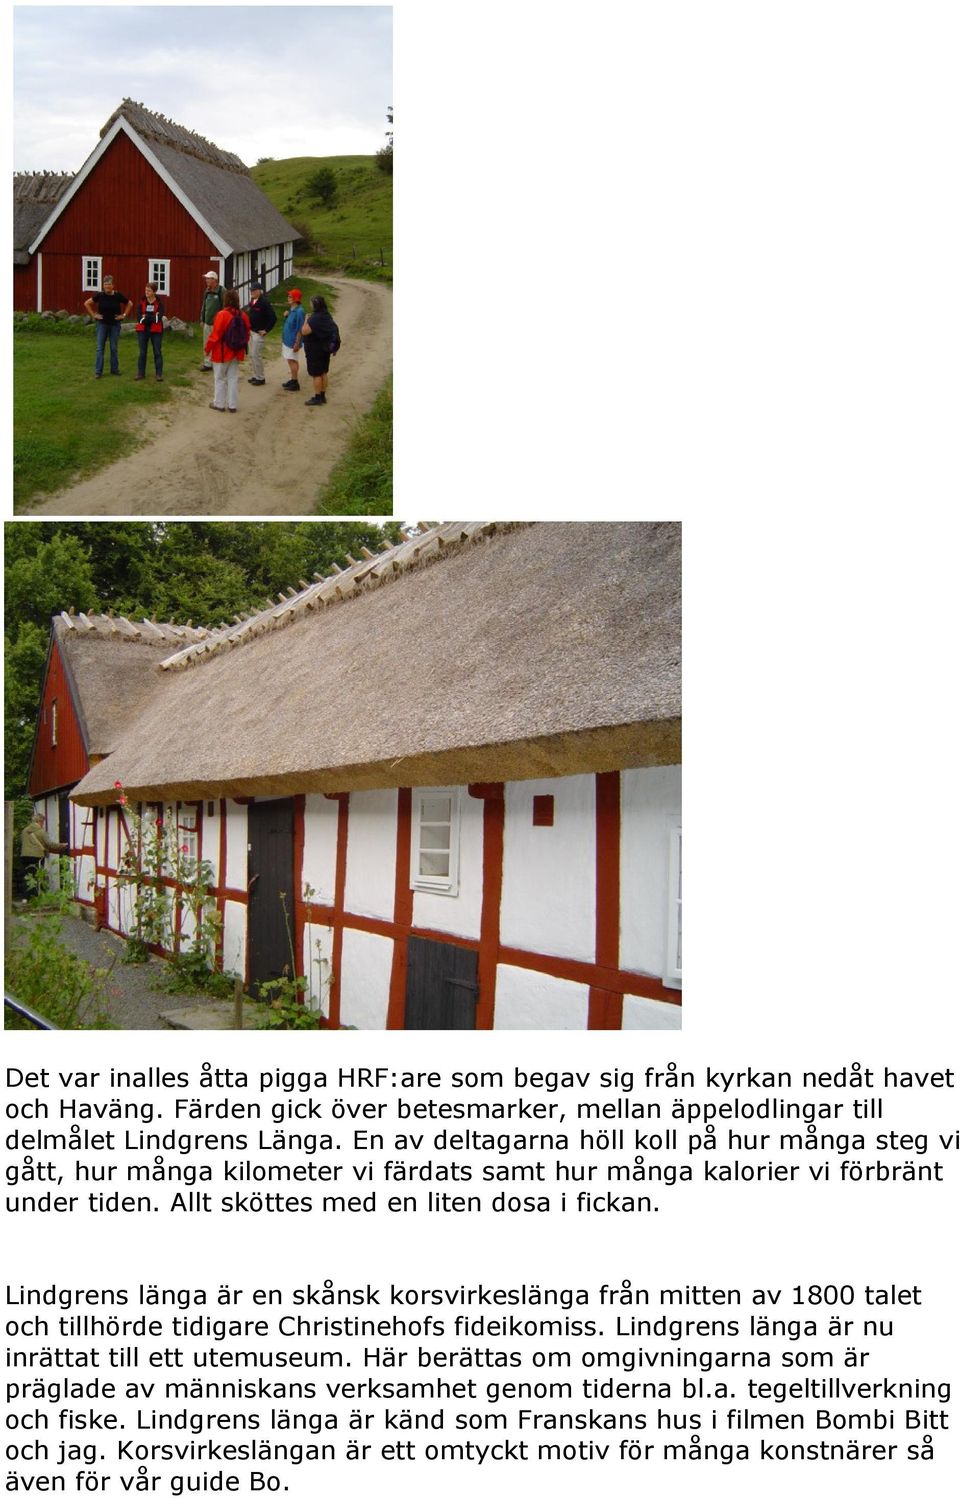 Lindgrens länga är en skånsk korsvirkeslänga från mitten av 1800 talet och tillhörde tidigare Christinehofs fideikomiss. Lindgrens länga är nu inrättat till ett utemuseum.